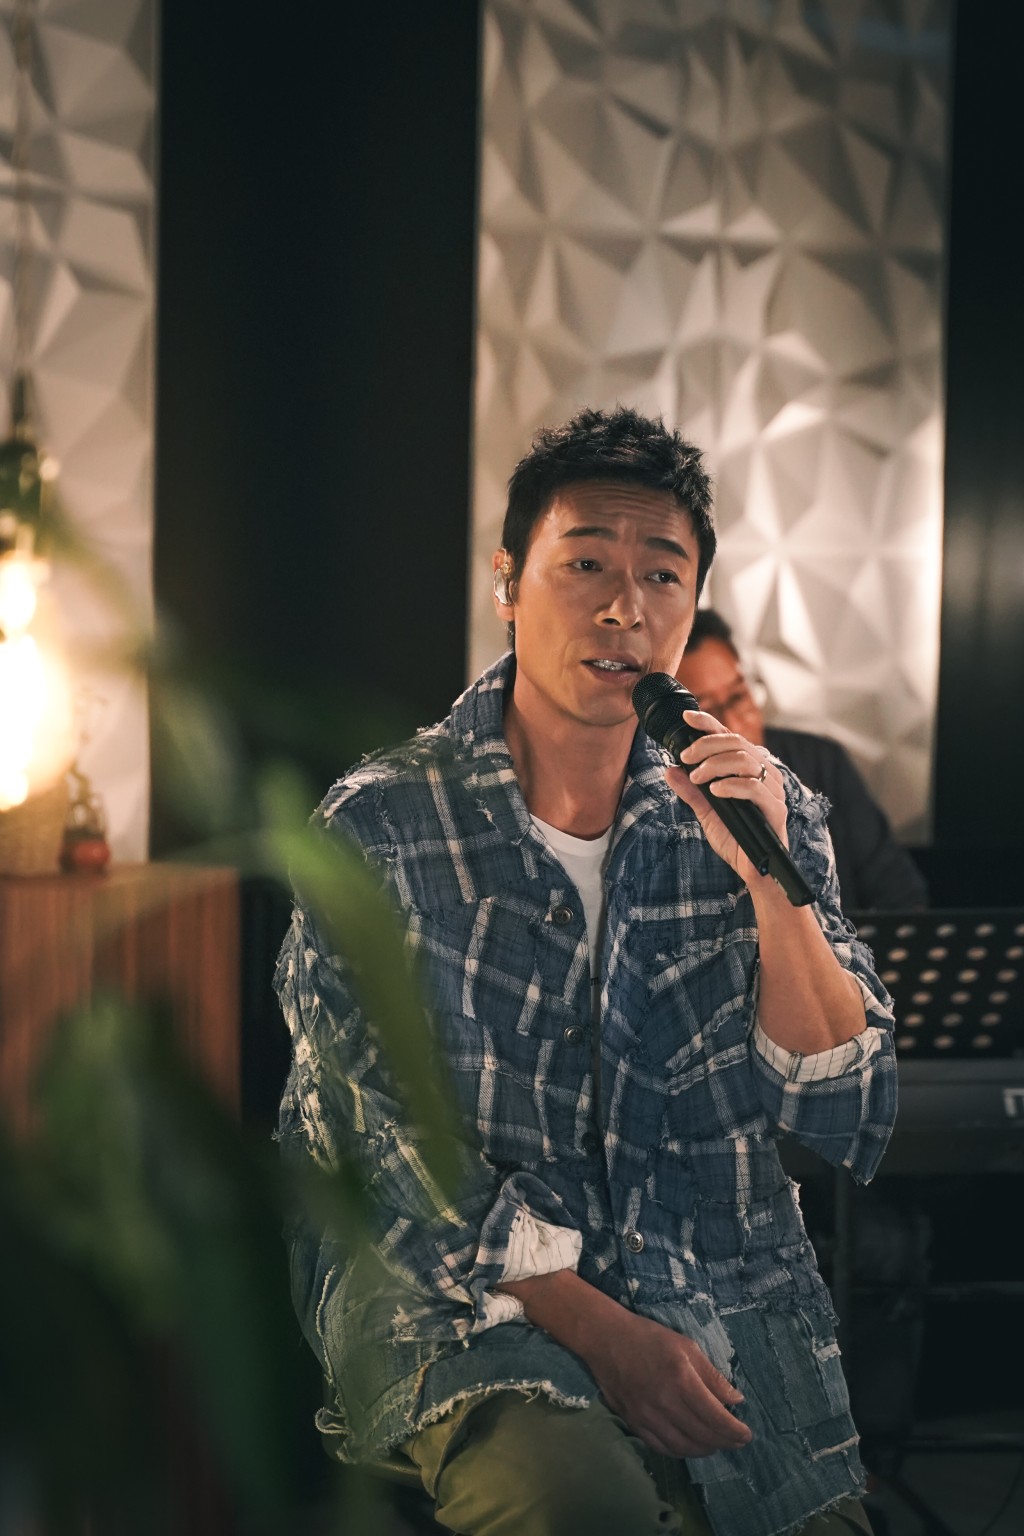 許志安去年簽約環球唱片推出新歌，正式復出歌壇，開直播演唱會時更狀態大勇，獲得不少樂迷支持。